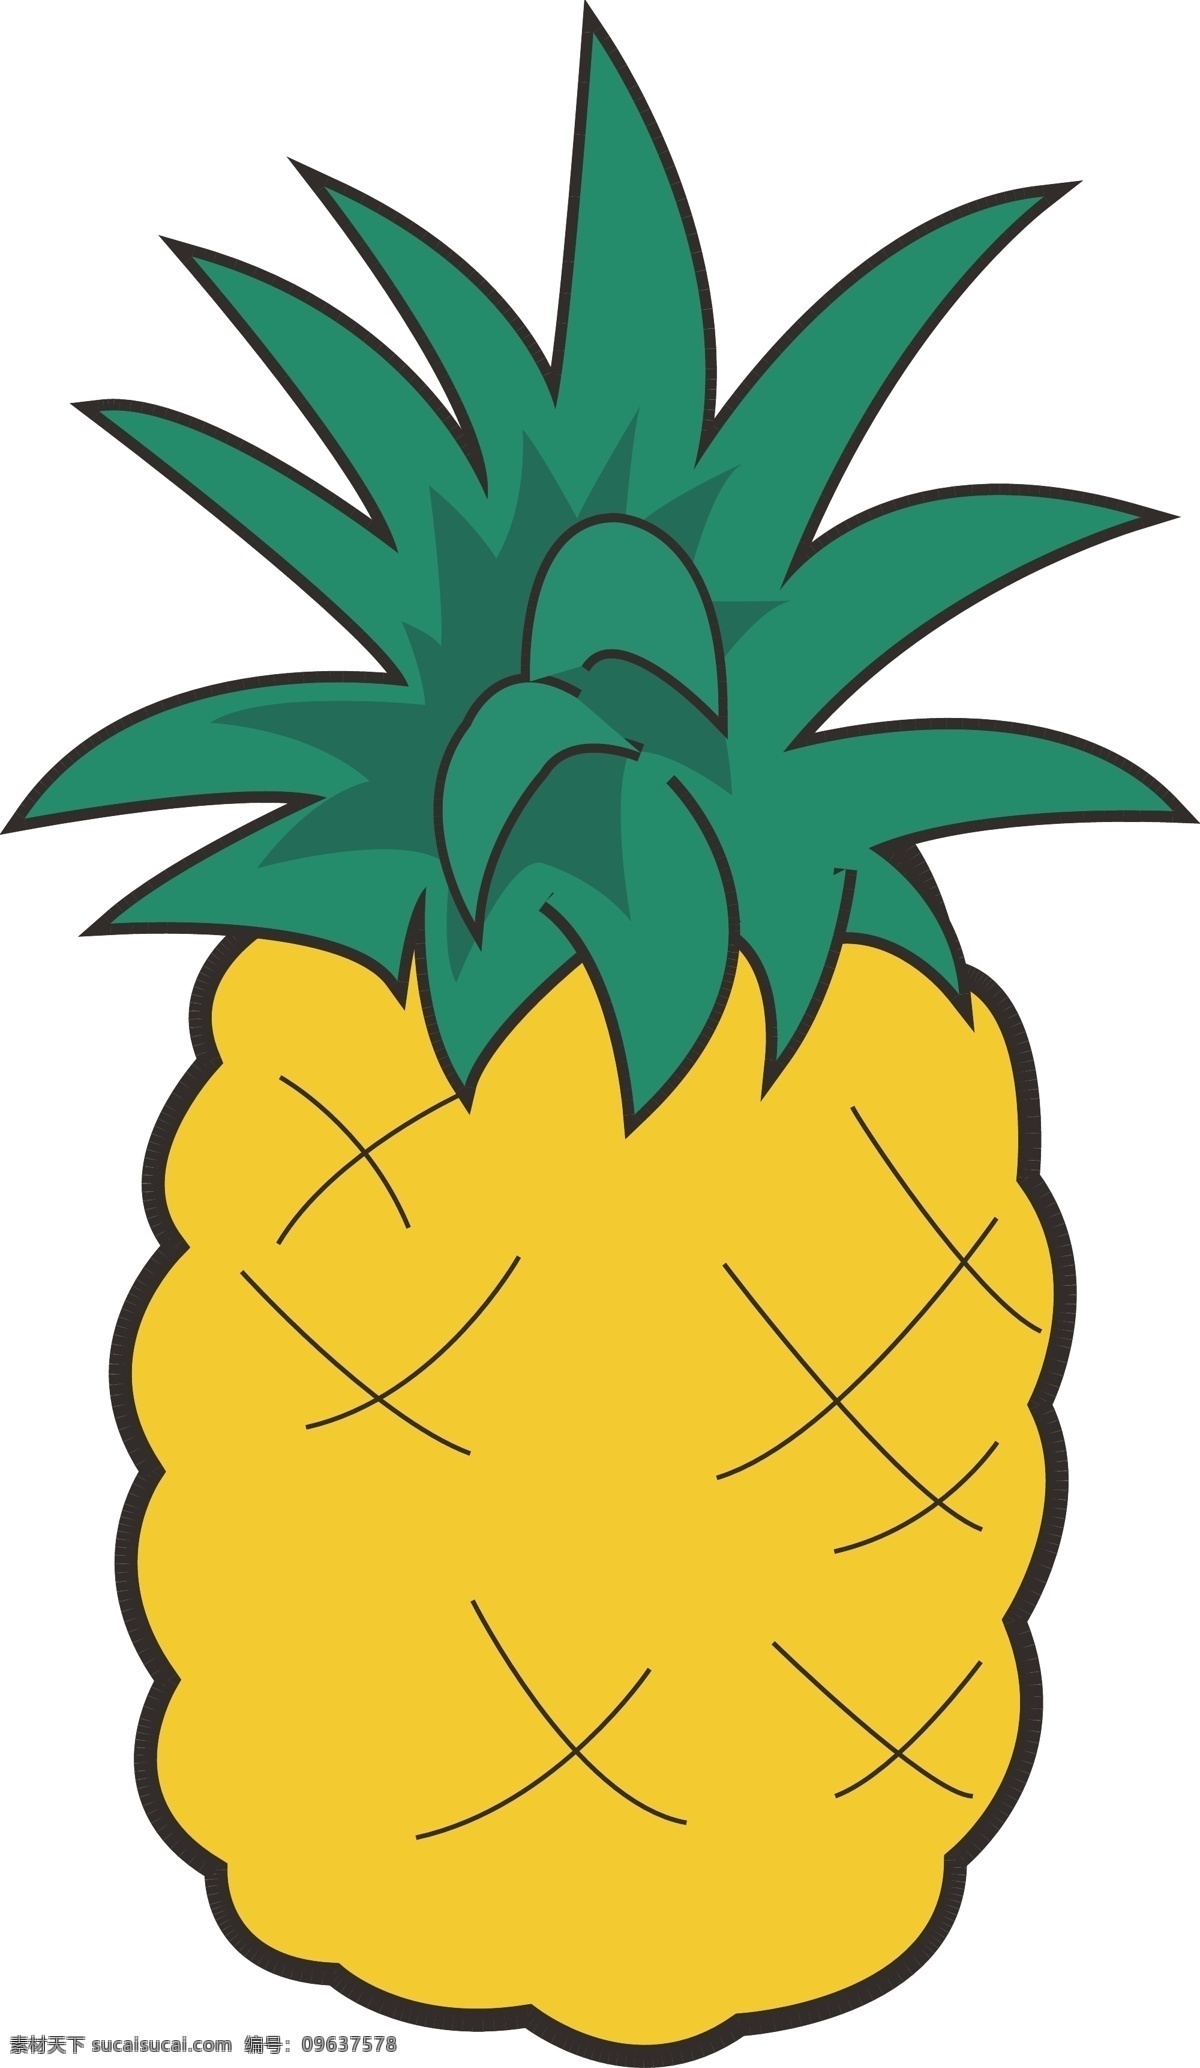 夏季 菠萝 元素 矢量图 夏季菠萝 黄色 绿色 菠萝元素 简笔画